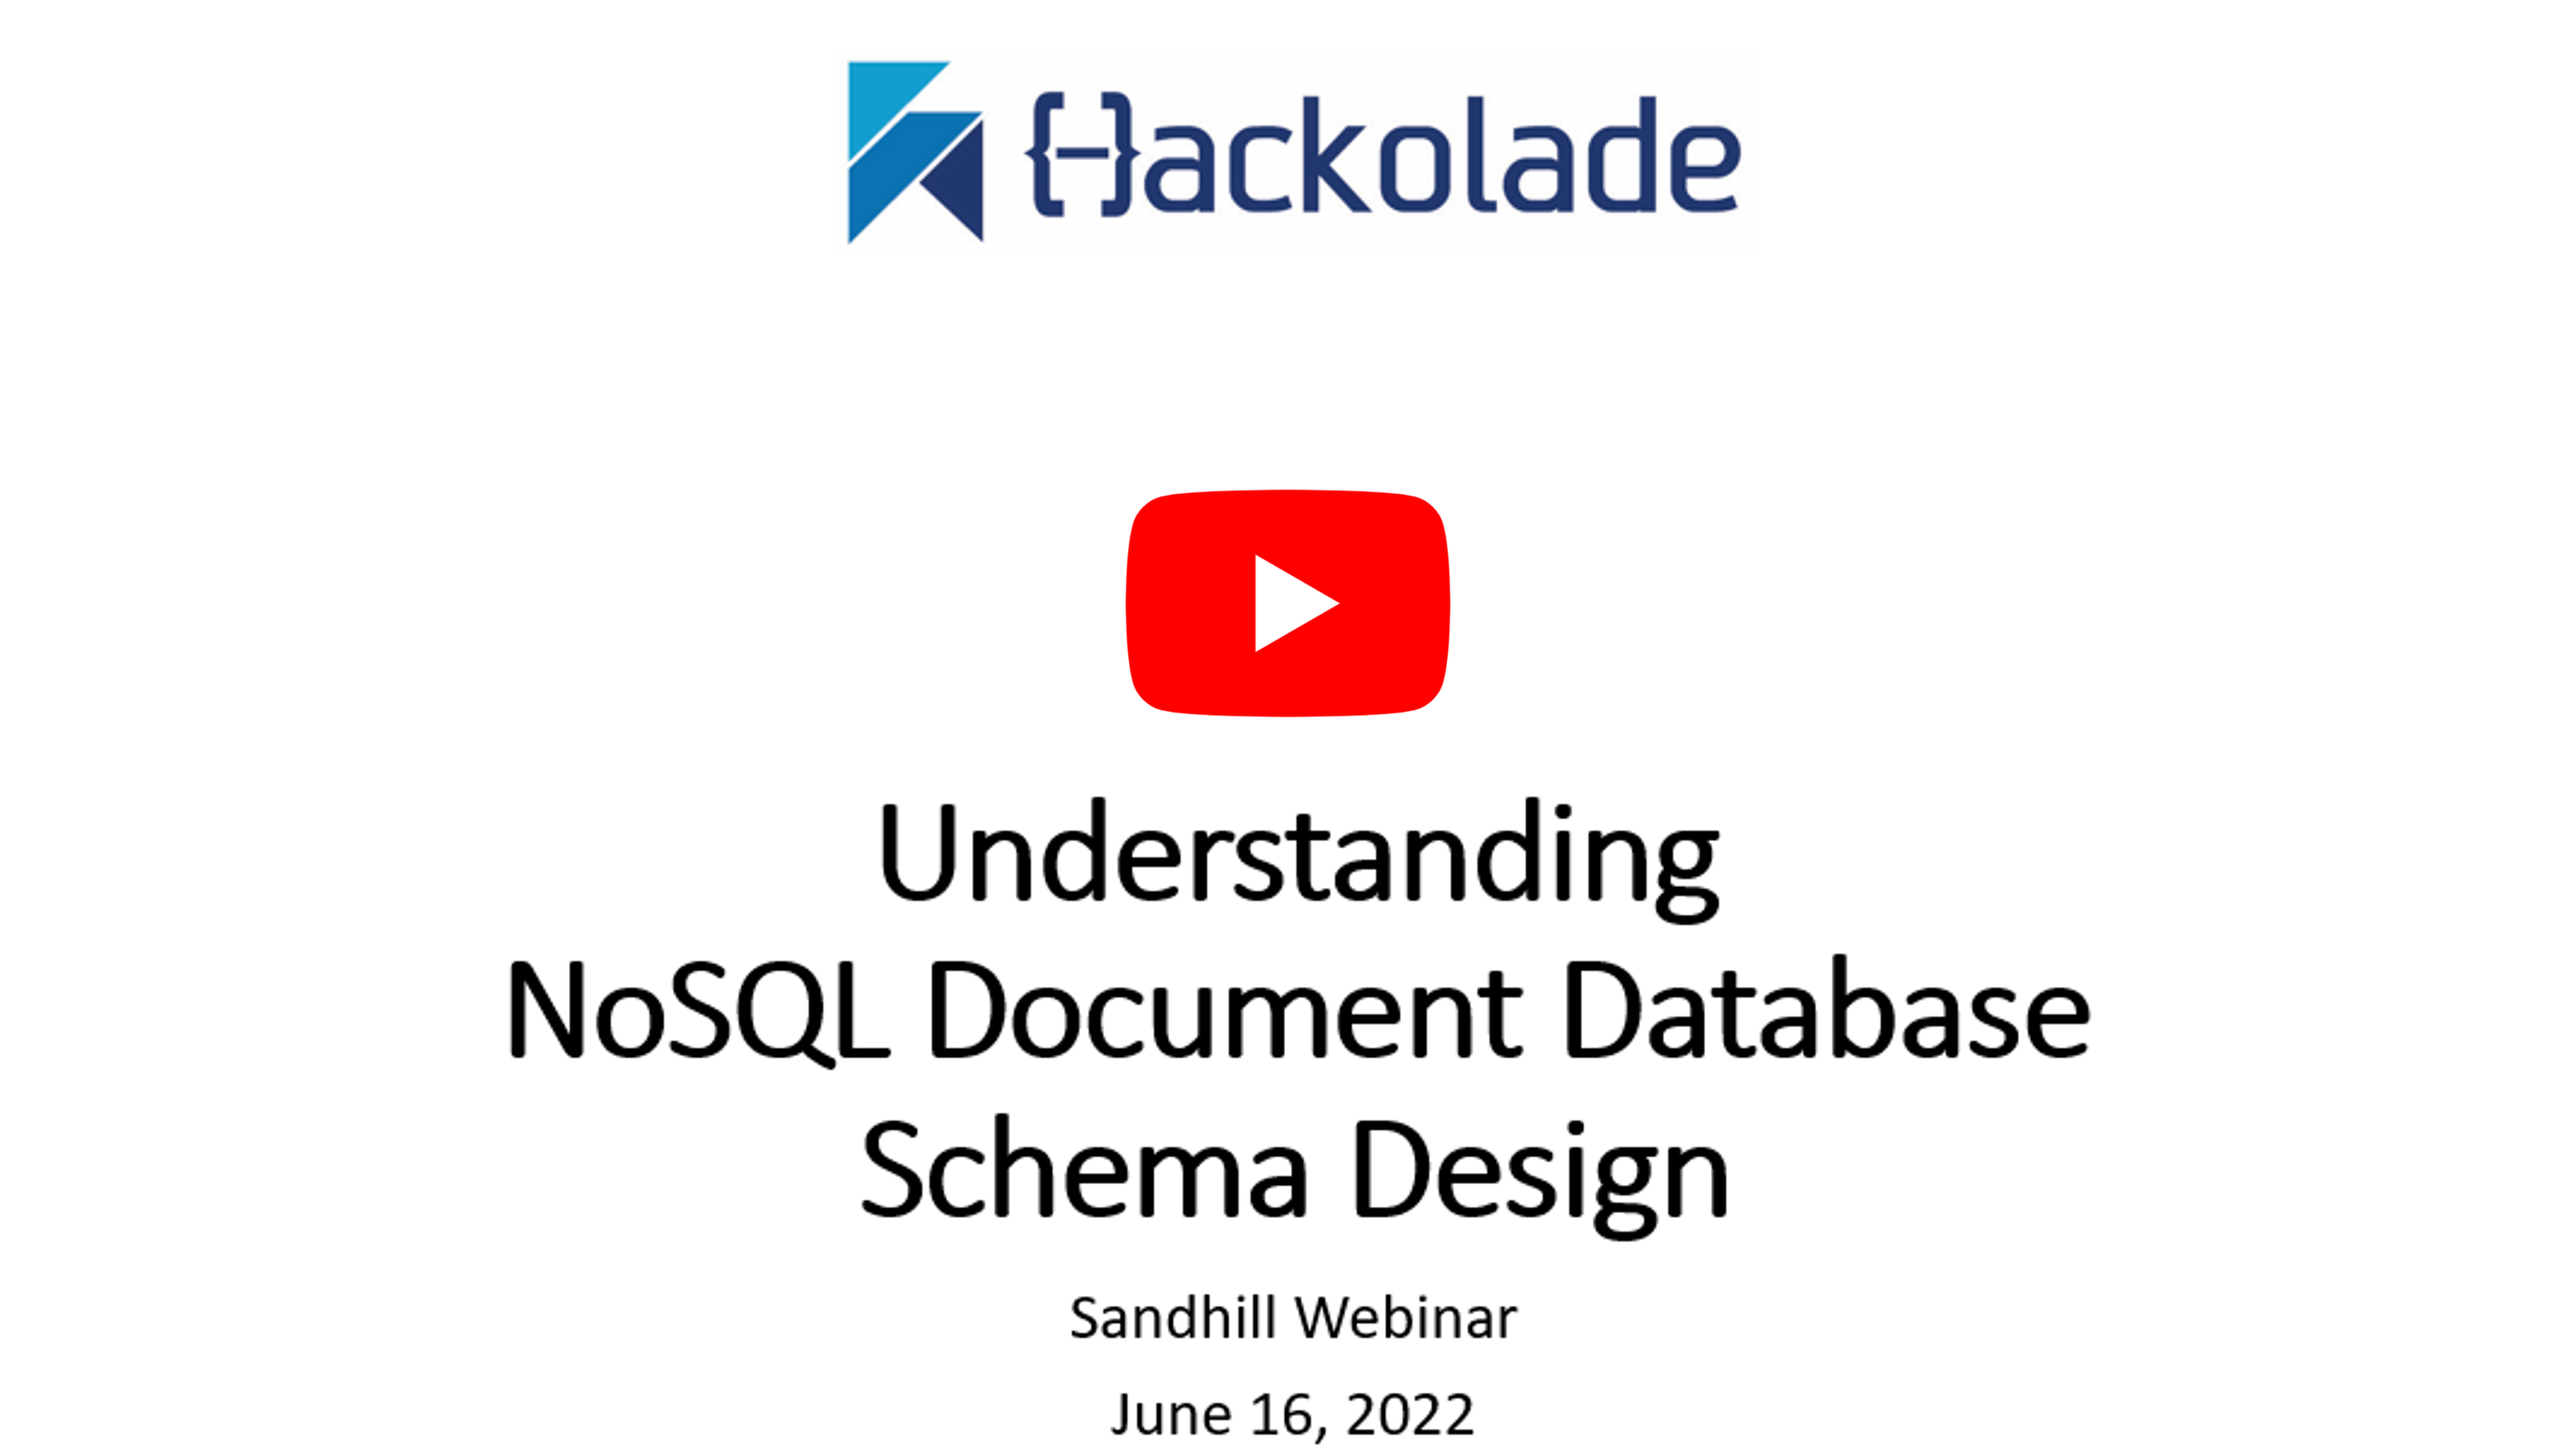 NoSQL Document Database Schema Design